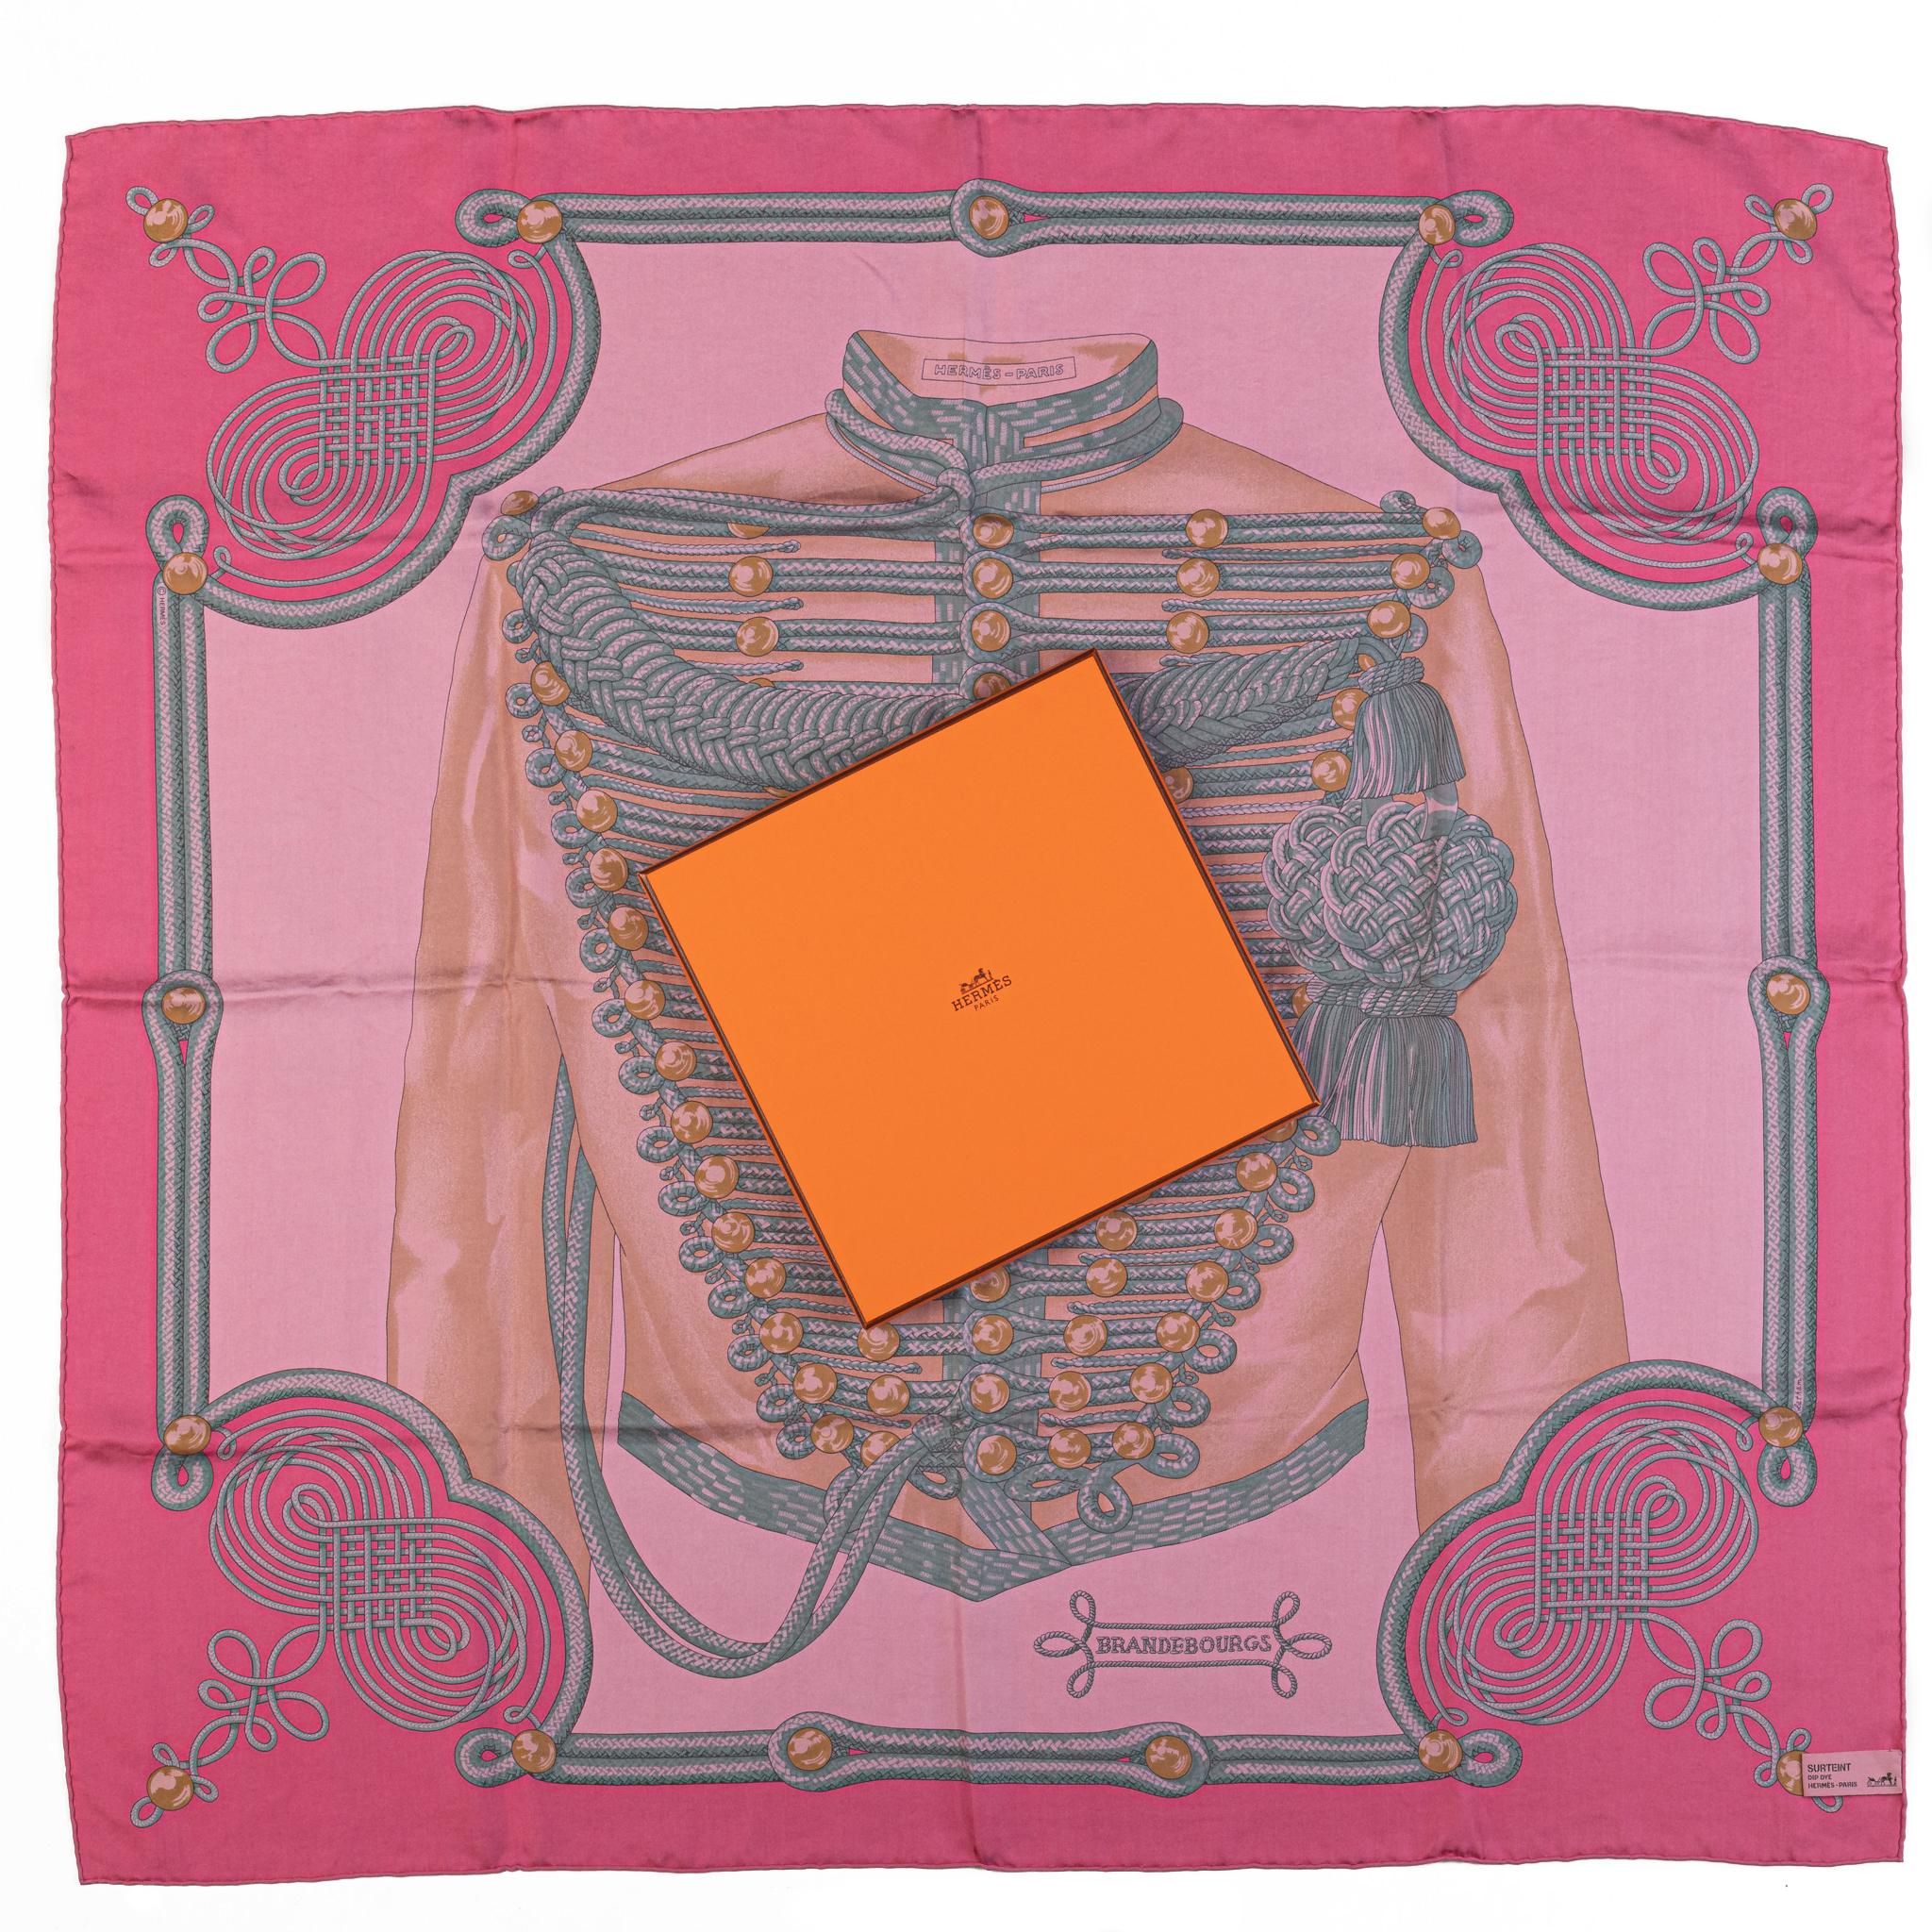 Hermès nouvelle collection rose Brandebourg en soie lavée. Livré avec sa boîte d'origine.